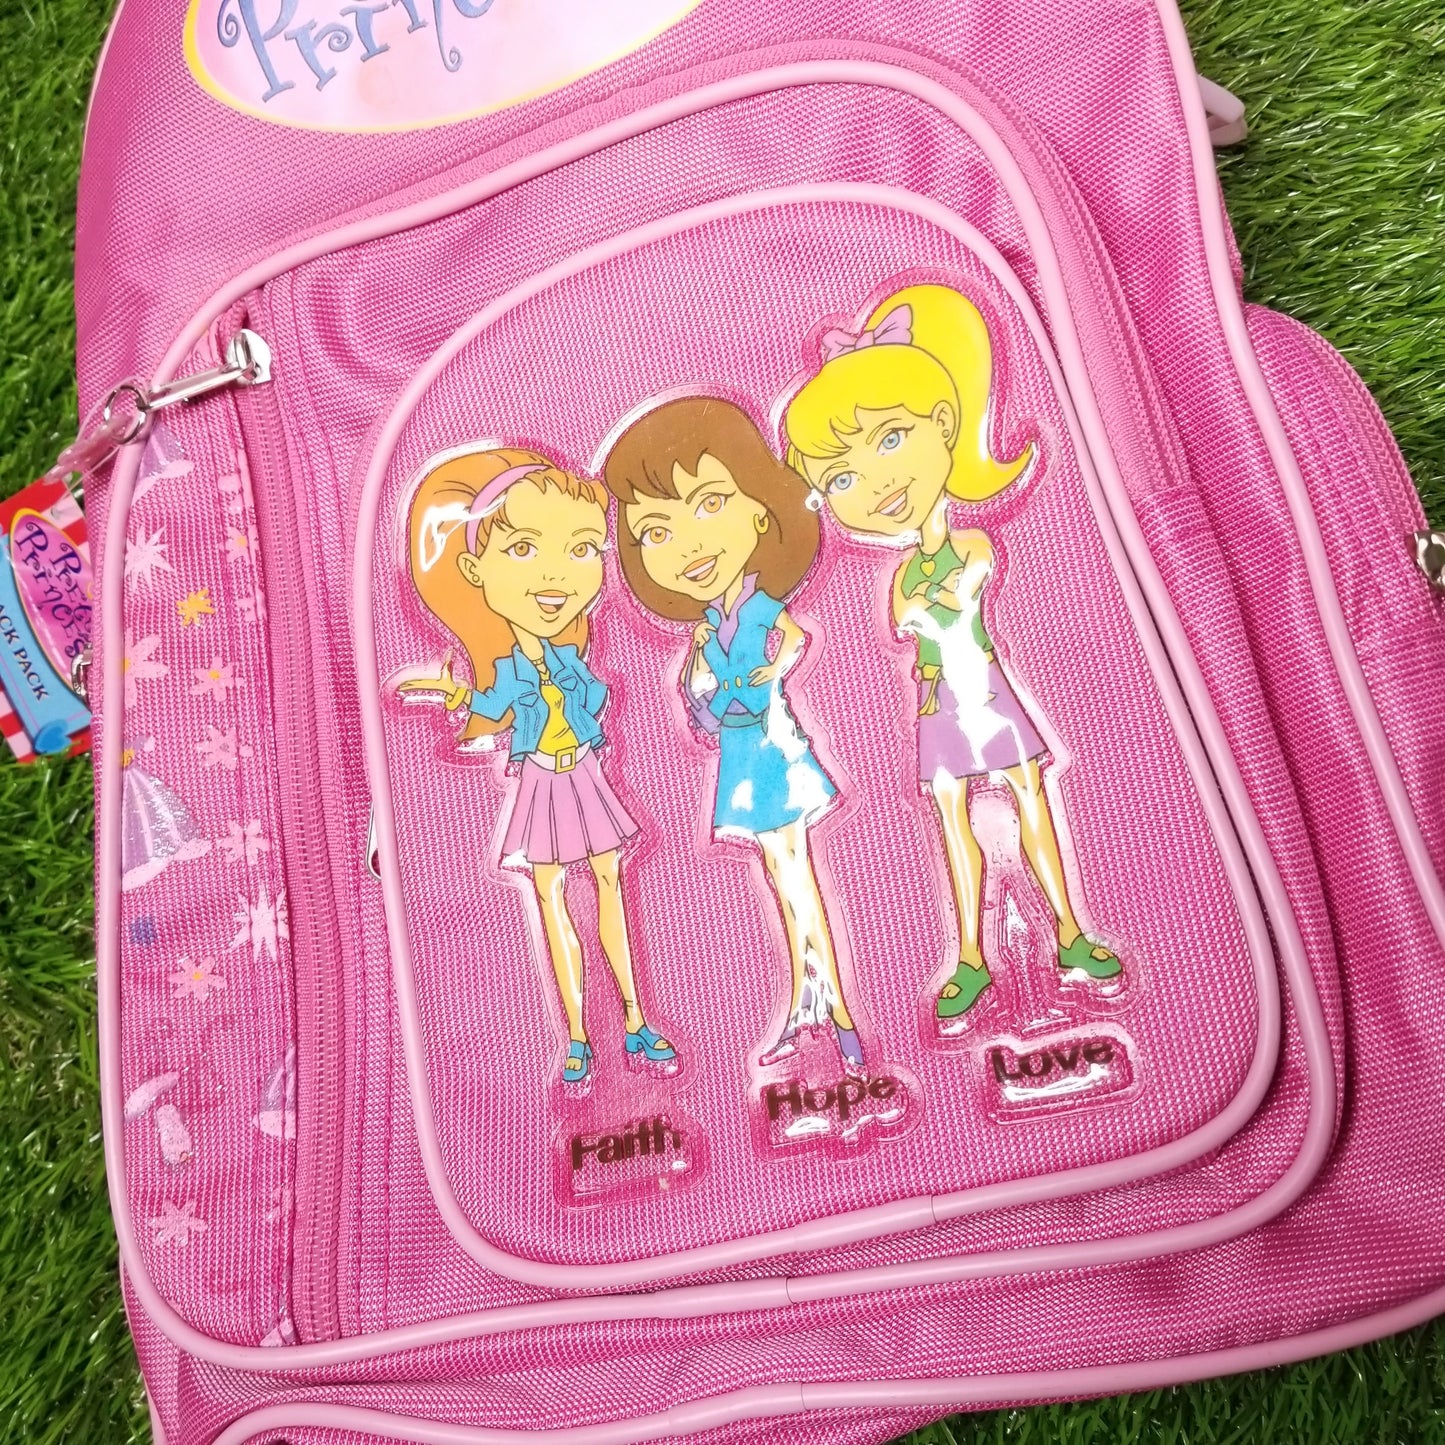 Faith hope love early 2000s sparkly backpack